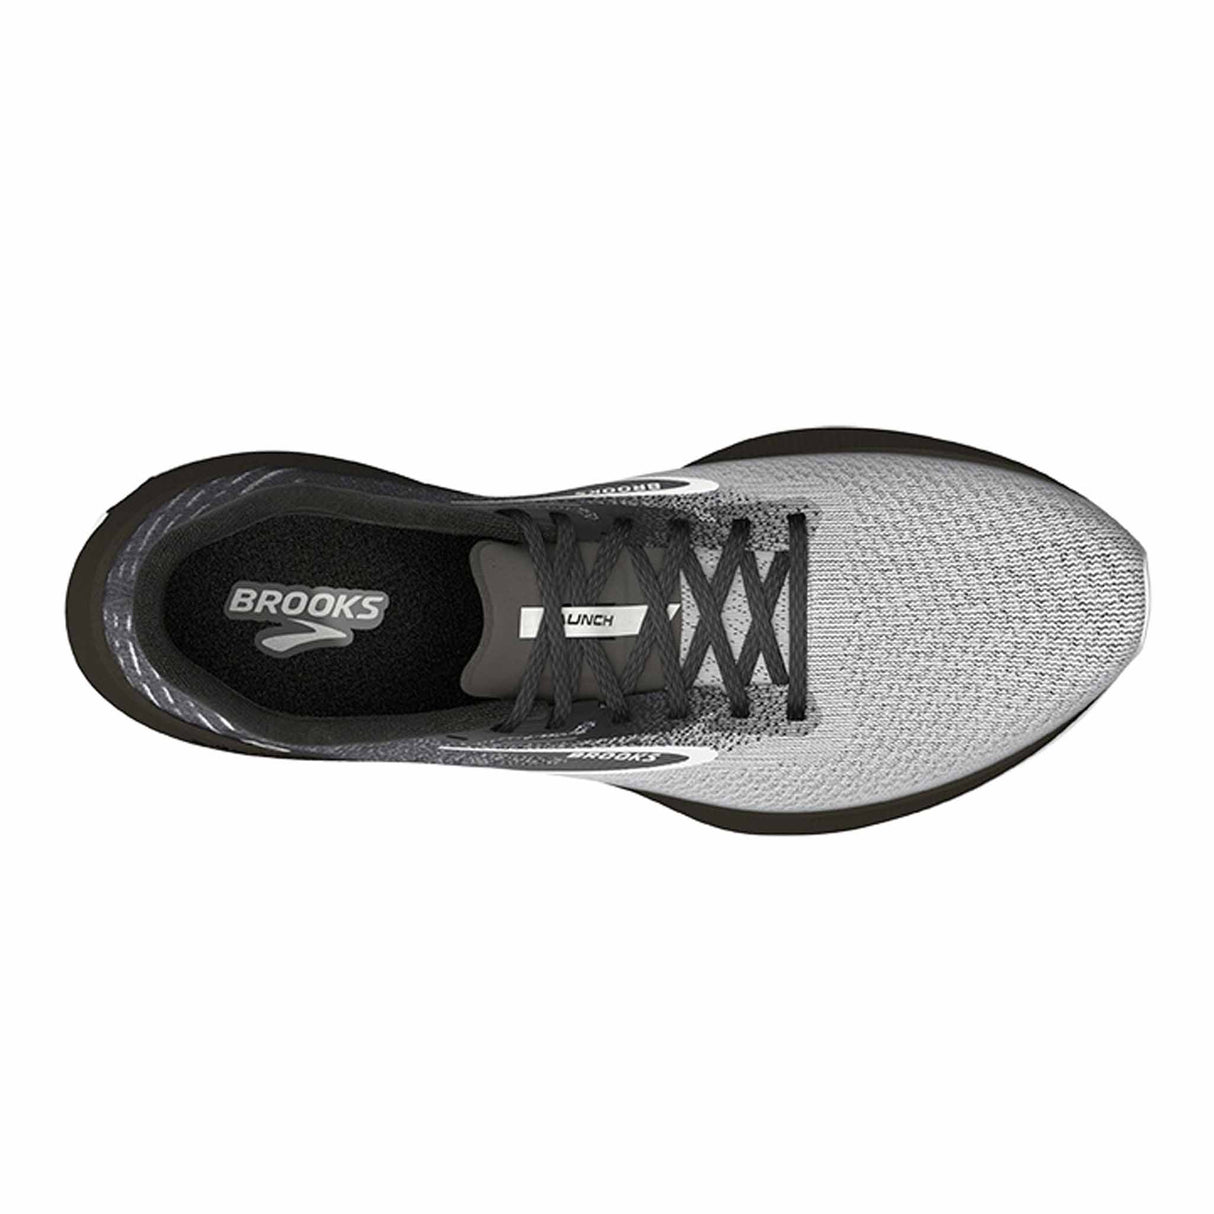 Brooks Launch 10 chaussures de course à pied pour homme - Black / Blackened Pearl / White